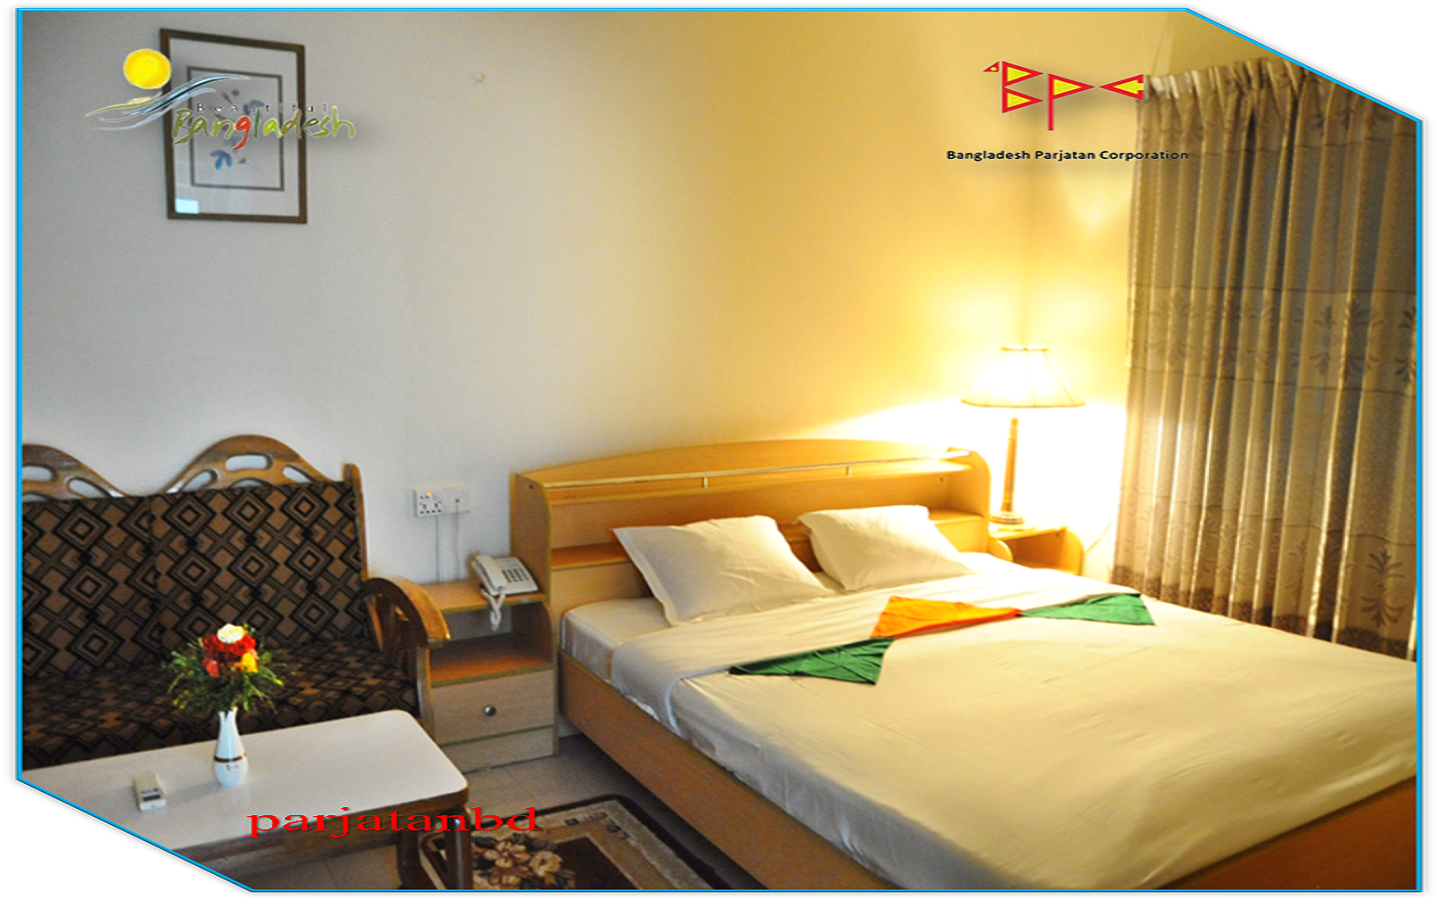 Room VIP Suite -1, Parjatan Motel, Rajshahi